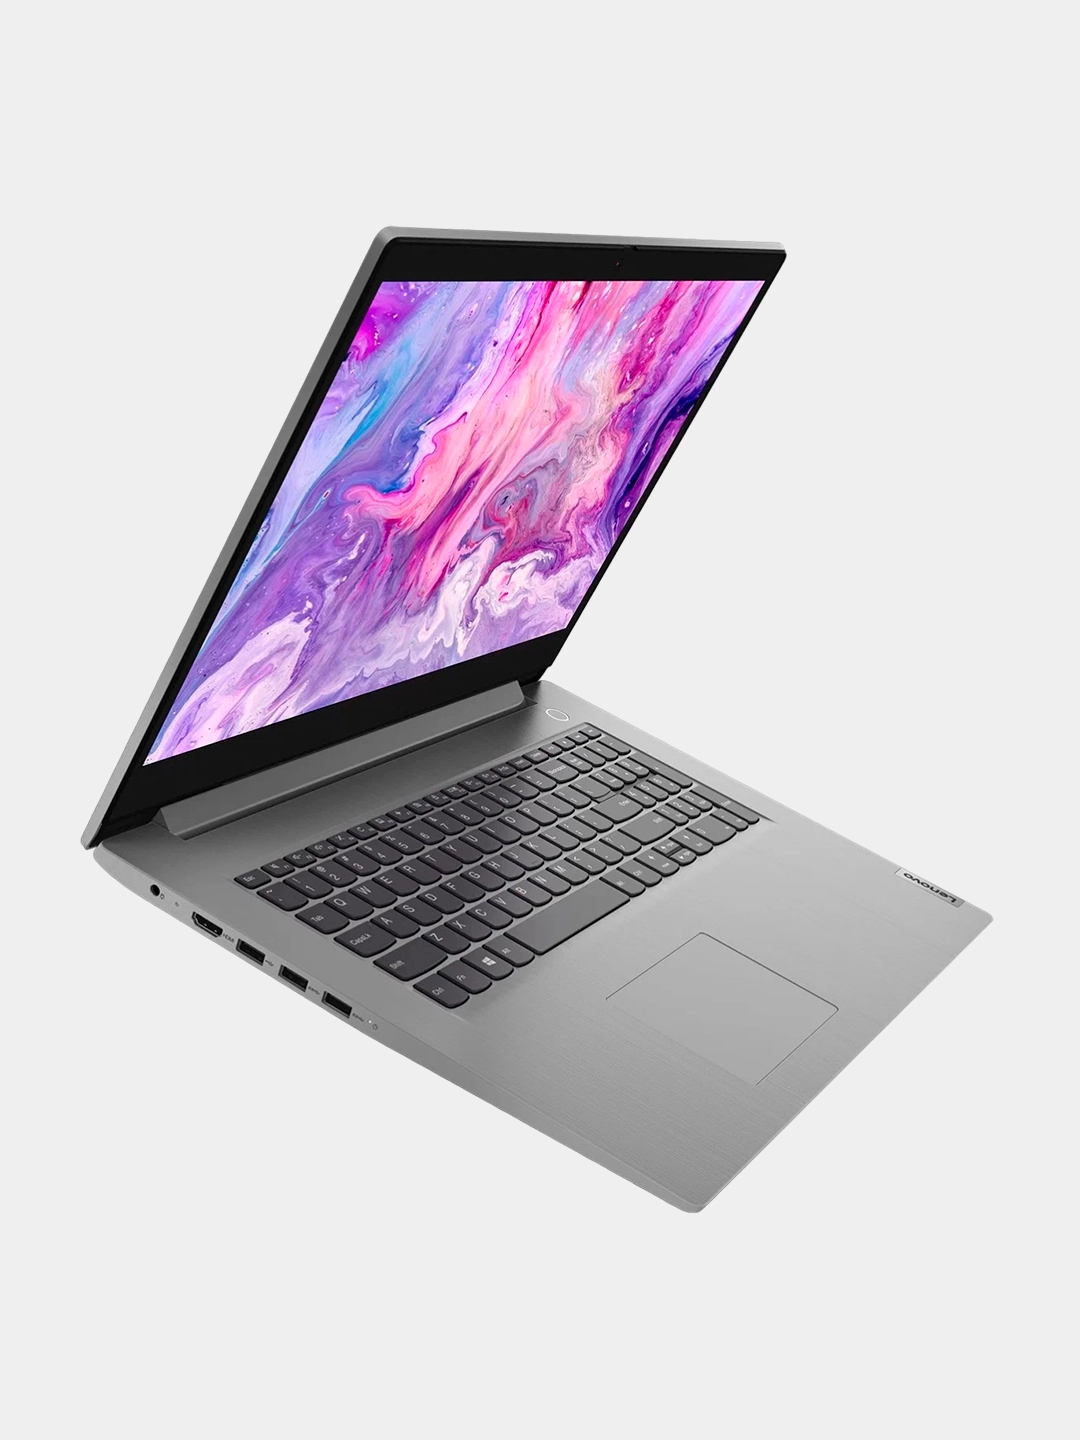 Ноутбук Lenovo IdeaPad 3 15IIL05, Core I5-1035G4, DDR4 8gb, SSD 256gb,15.6 FullHD IPS, Platinum Gray онлайн